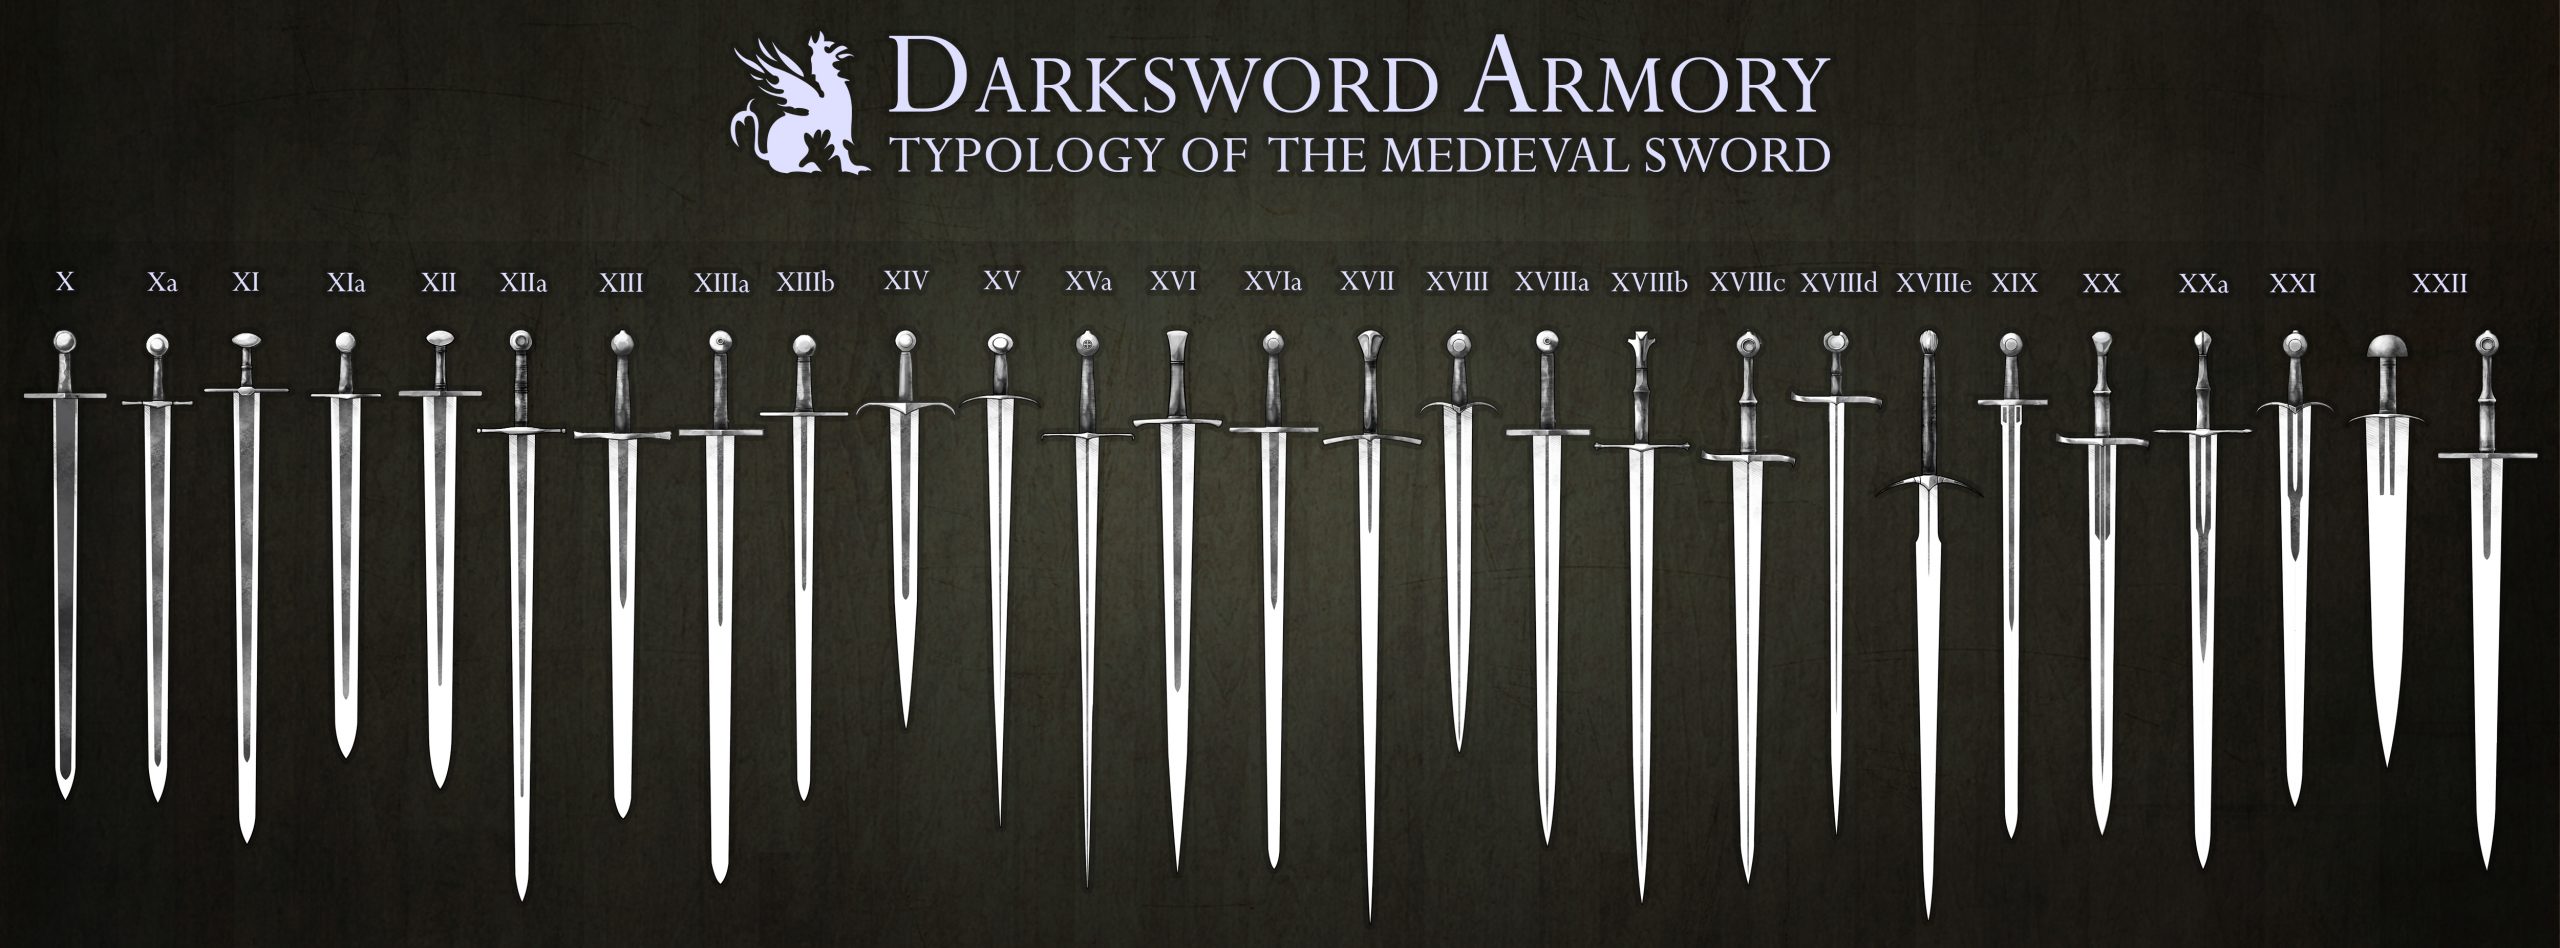 sword pommel types